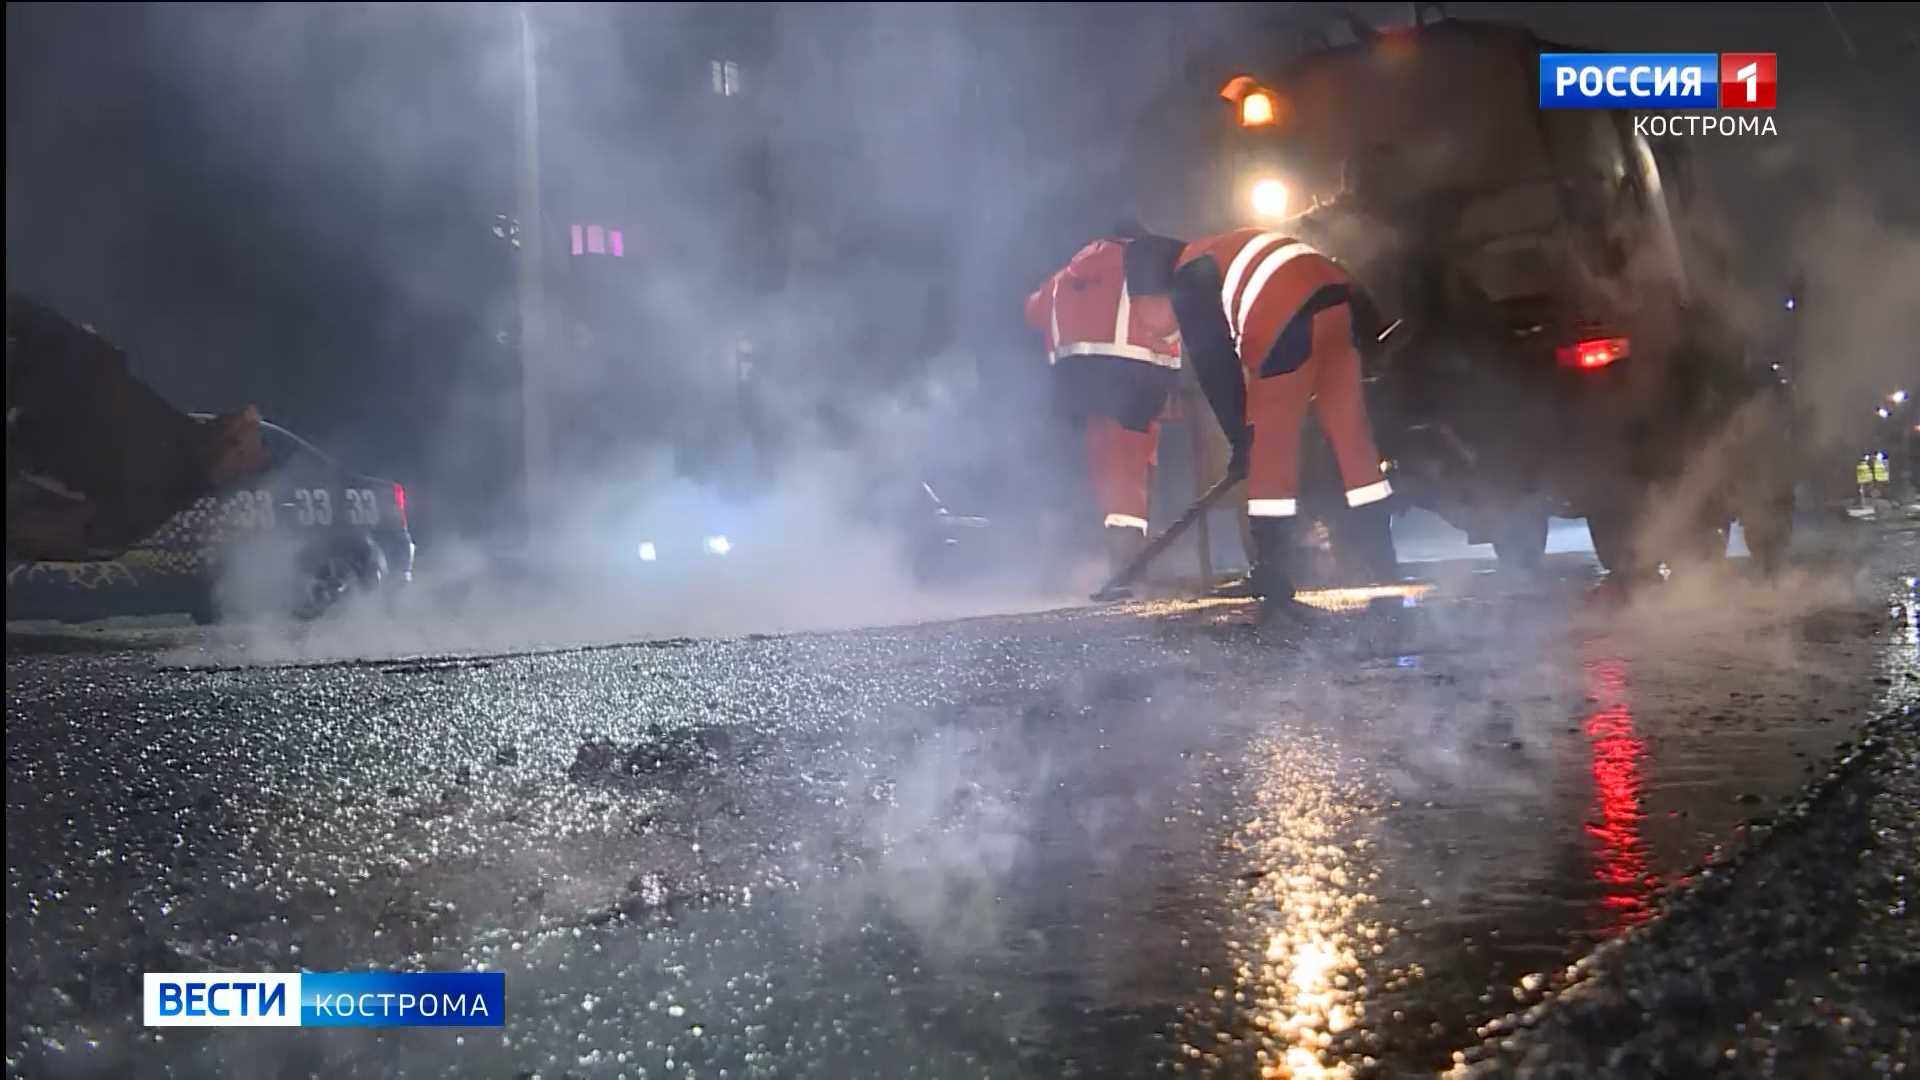 Главное сегодня
                  
                                                 
                  час назад
                                                    
                              
              
                                                    
                    
                
                
                
                  
                    
                      На улицы Костромы вылили 90 тонн асфальтобетонной смеси за выходные                    
                    
                      Ликвидацию ям на дорогах областной столицы проводят исключительно в ночное время.